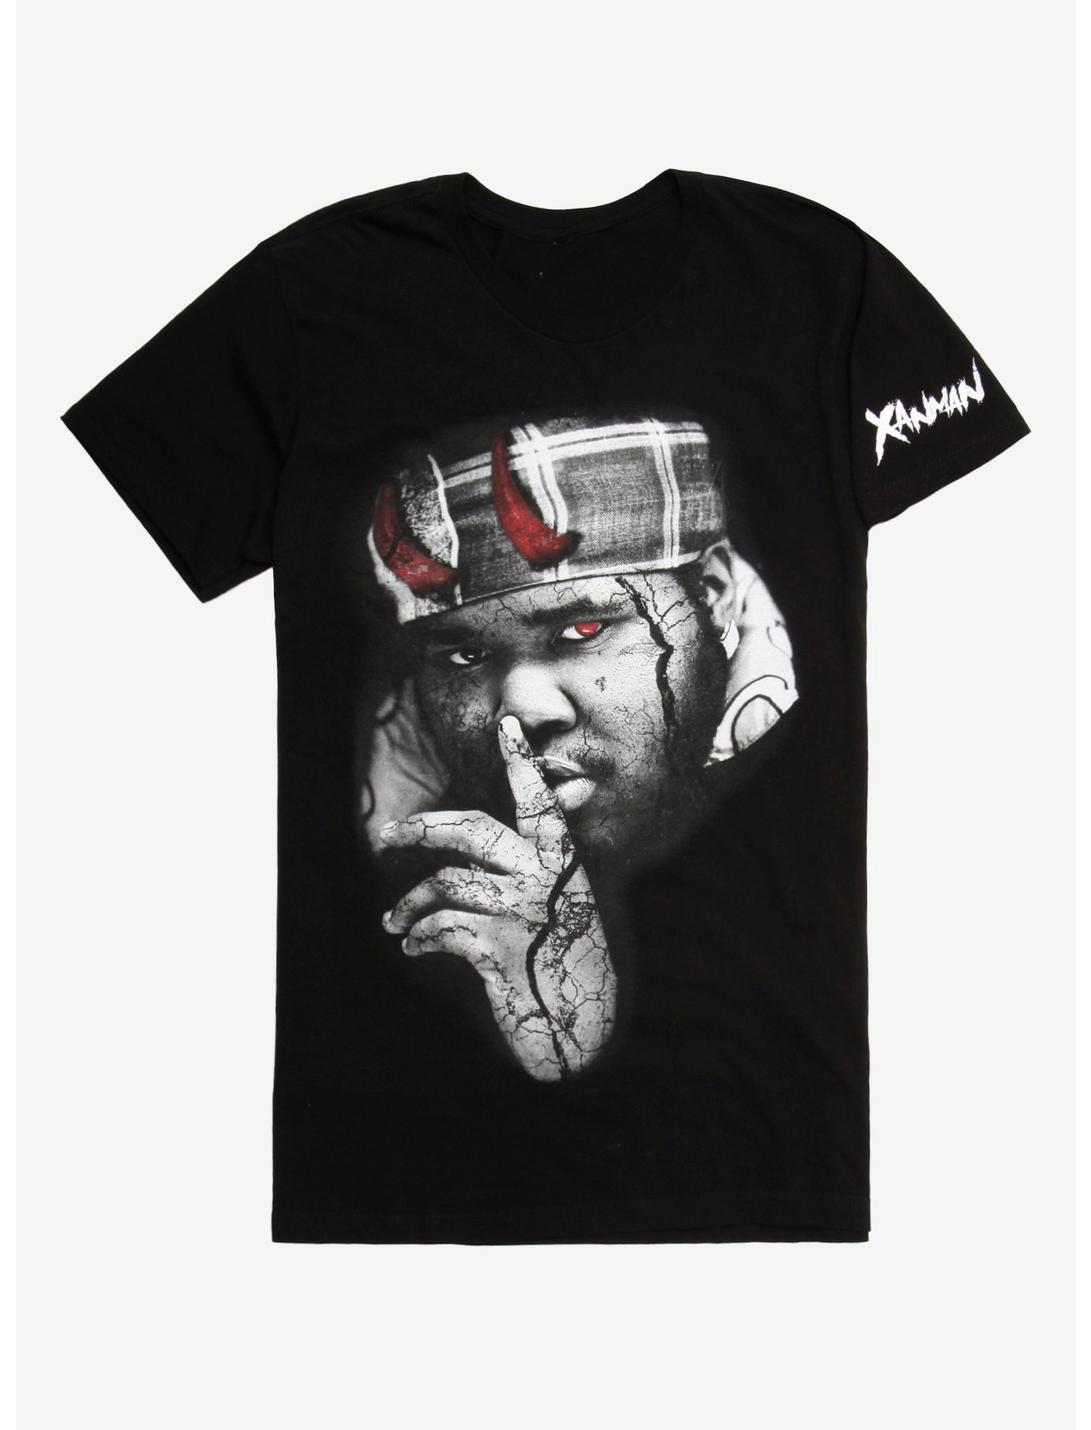 Xanman I'm A Bad Person Album Art T-Shirt, BLACK, hi-res